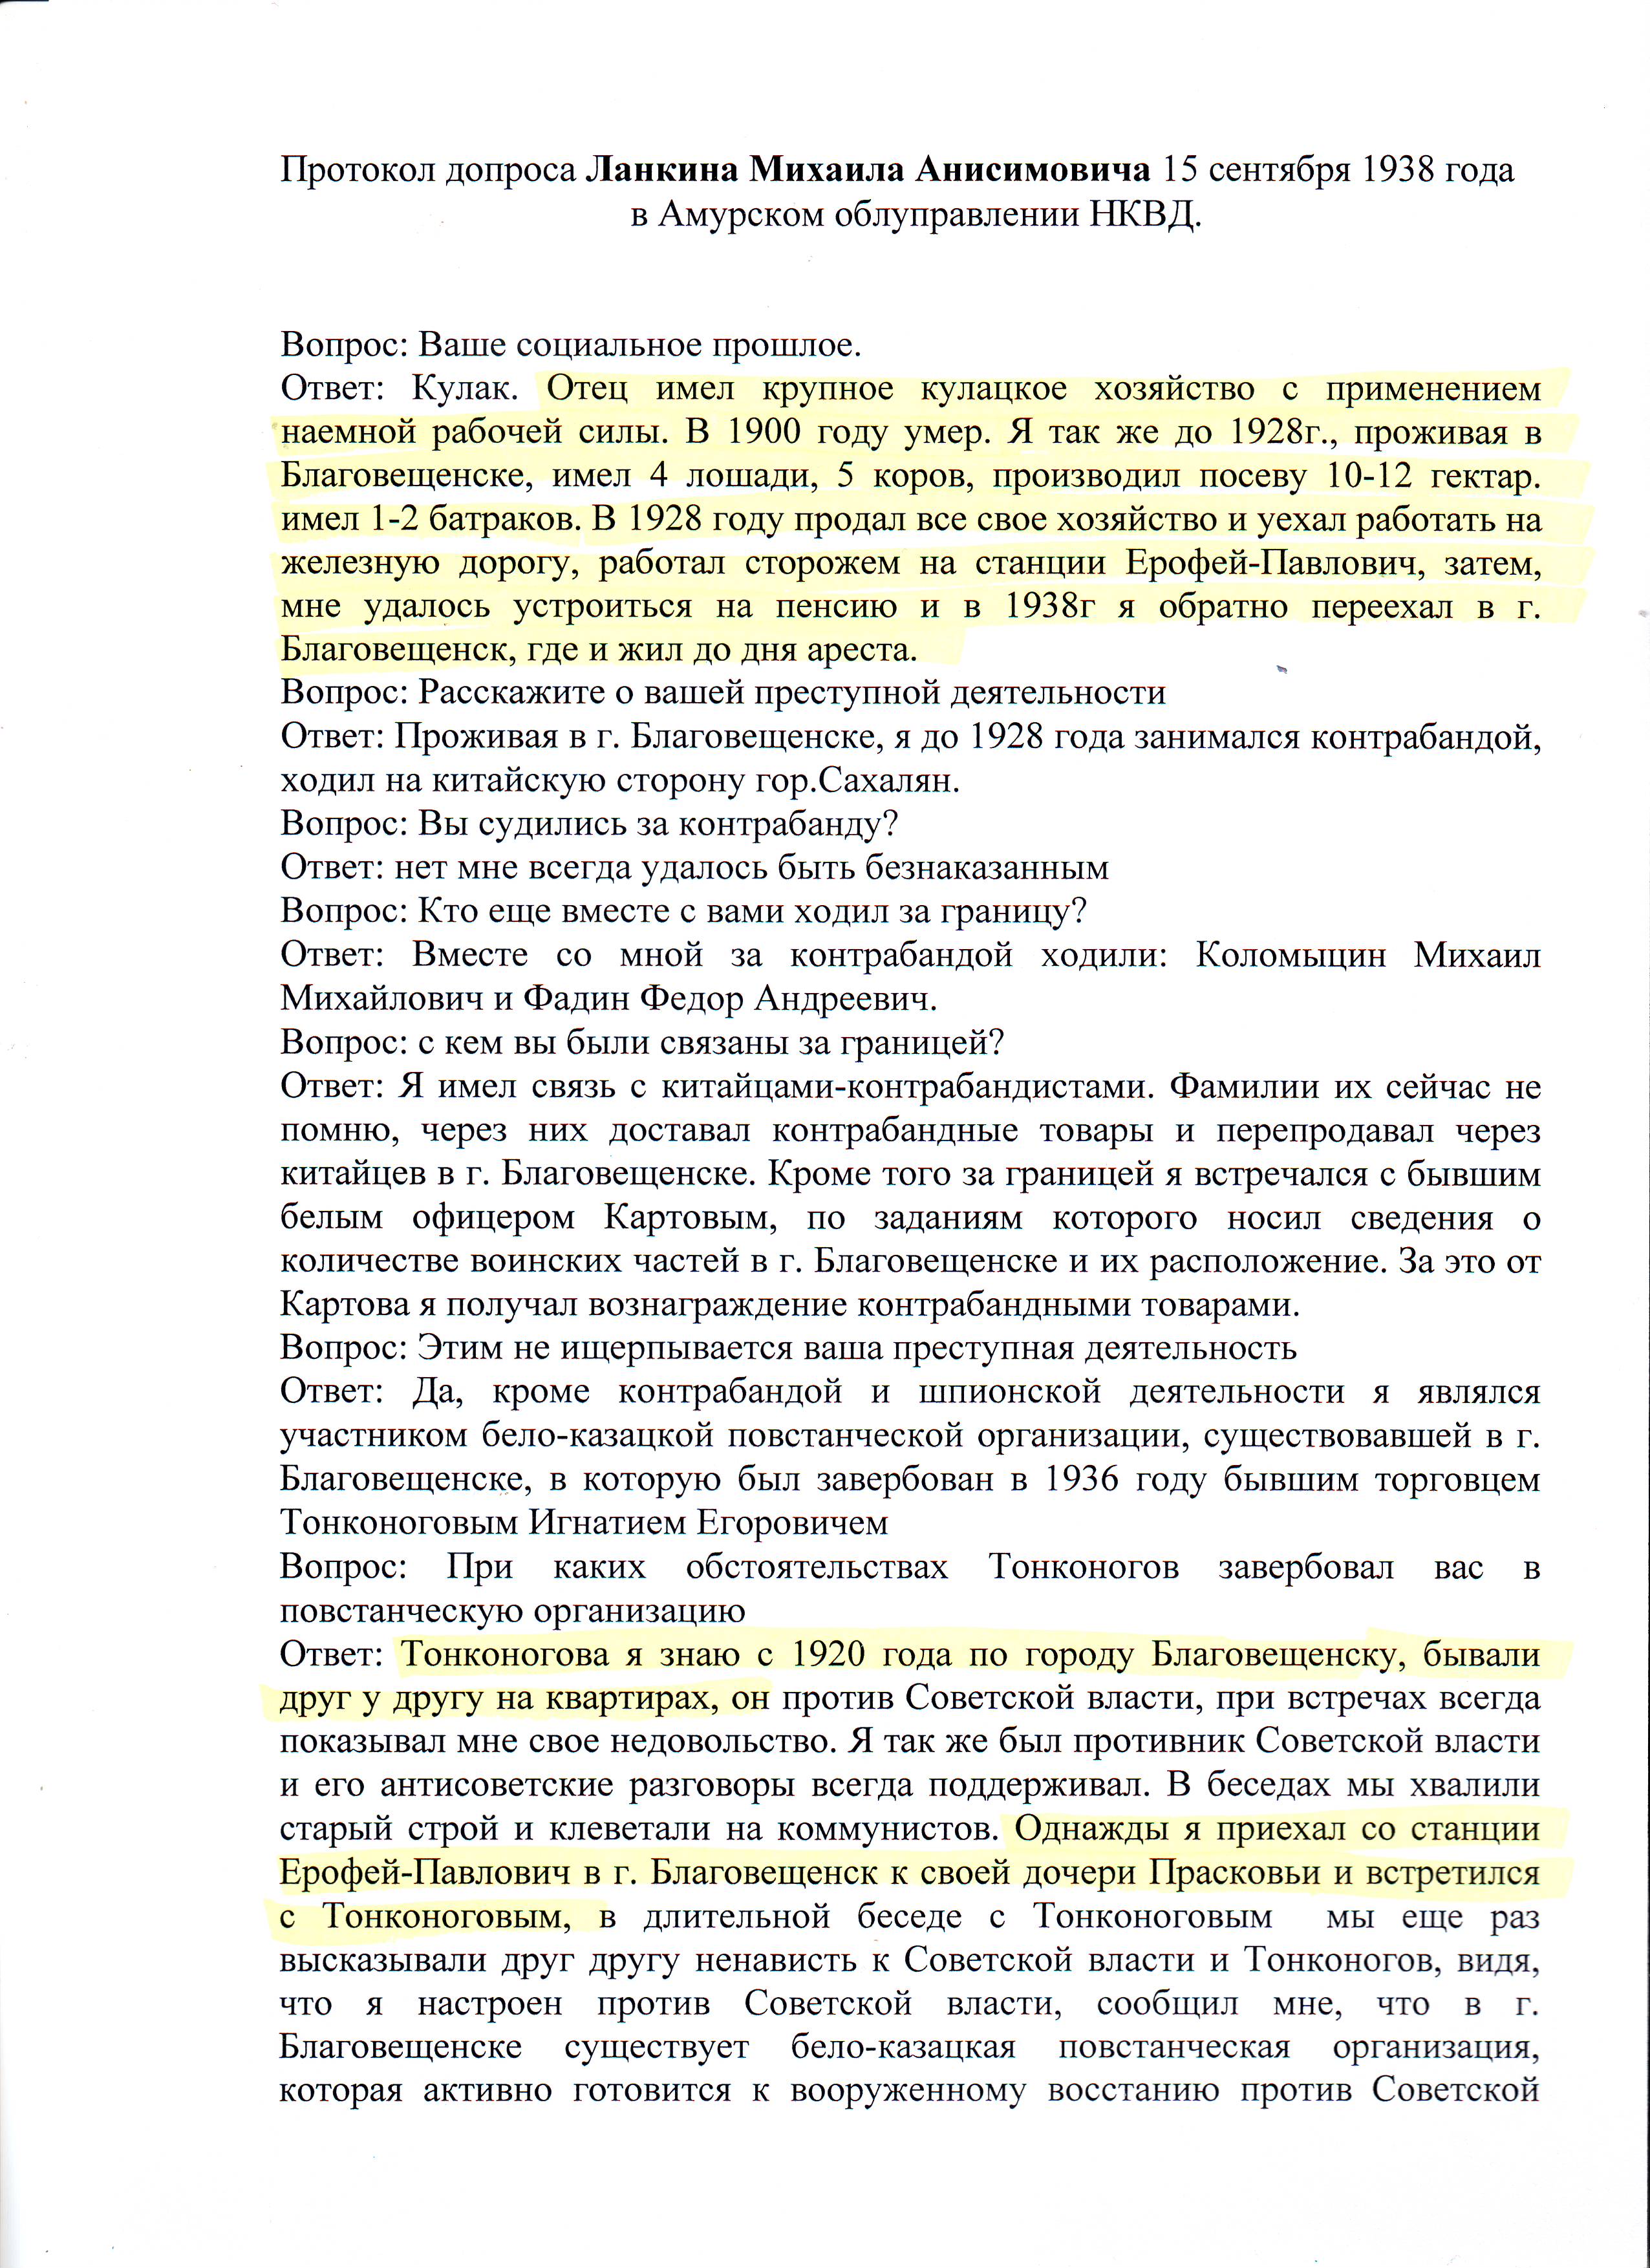 Протокол допроса Ланкина Михаила Анисимовича 15 сентября 1938 года в Амурском Облуправлении НКВД